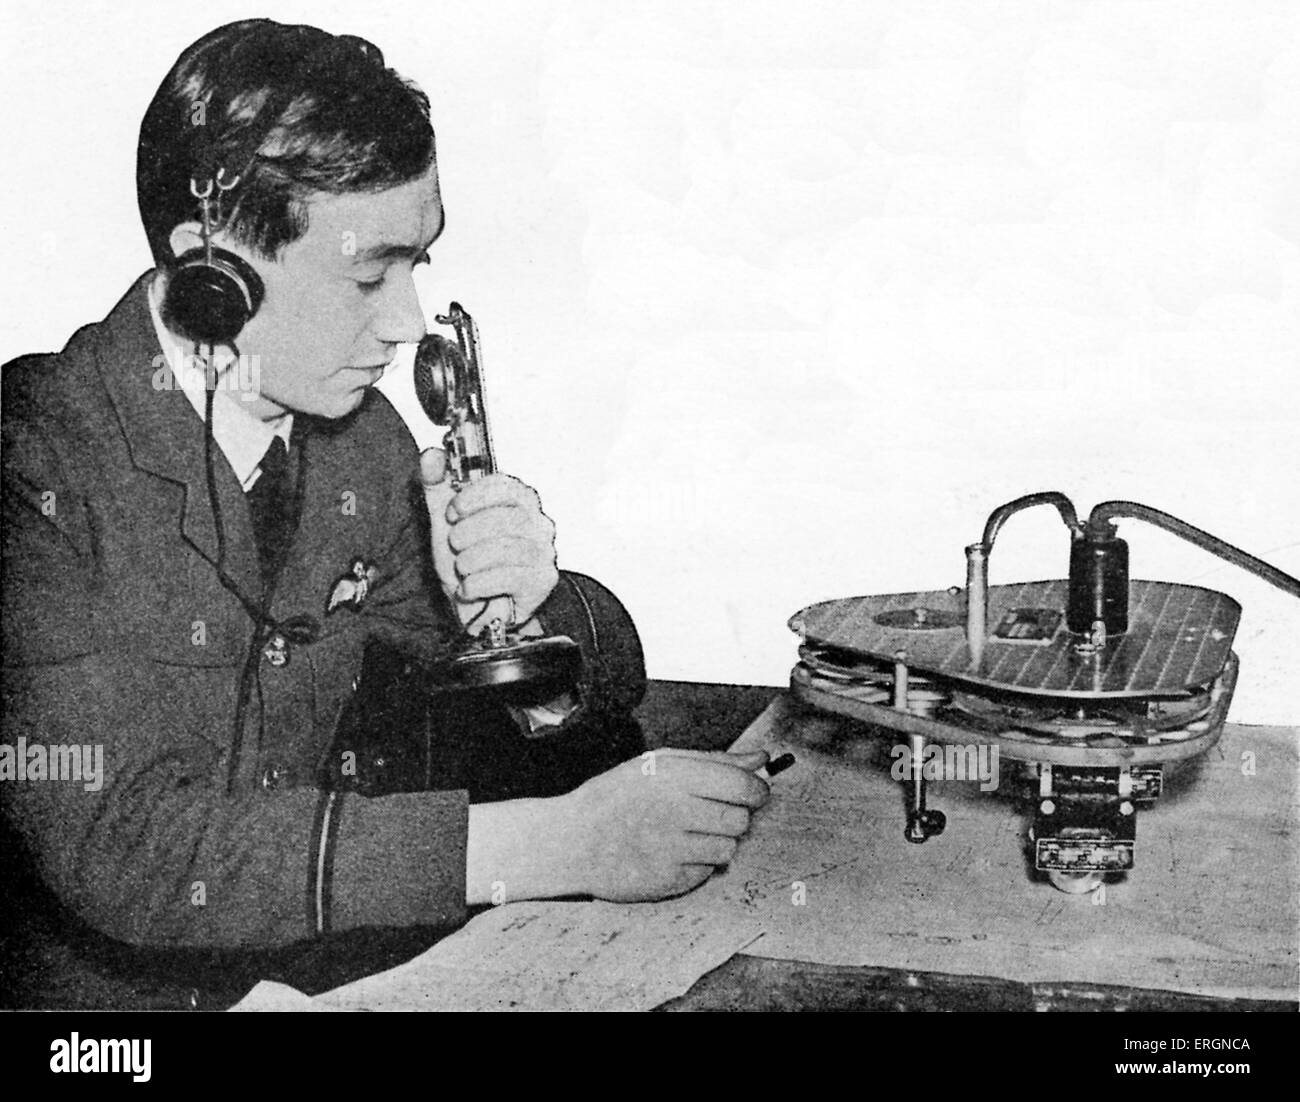 WW2 - RAF la formation des pilotes de chasse. Les Légendes se lit comme suit ; "La bouilloire graphique records pour l'avancement de l'instructeur de vol de son élève'. Banque D'Images